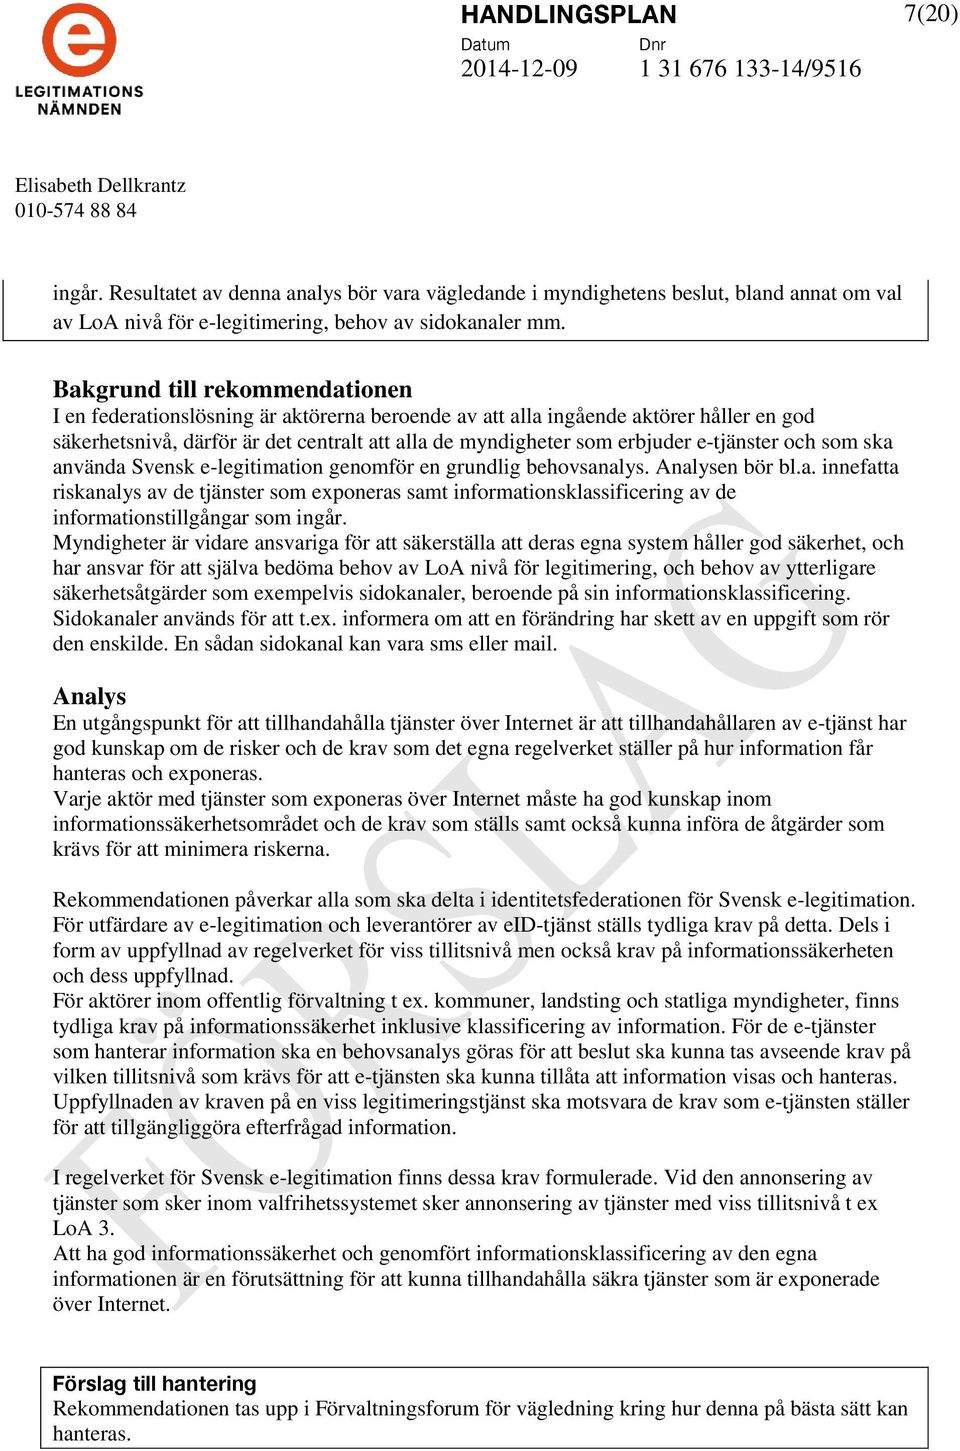 Svensk e-legitimation genomför en grundlig behovsanalys. en bör bl.a. innefatta riskanalys av de tjänster som exponeras samt informationsklassificering av de informationstillgångar som ingår.